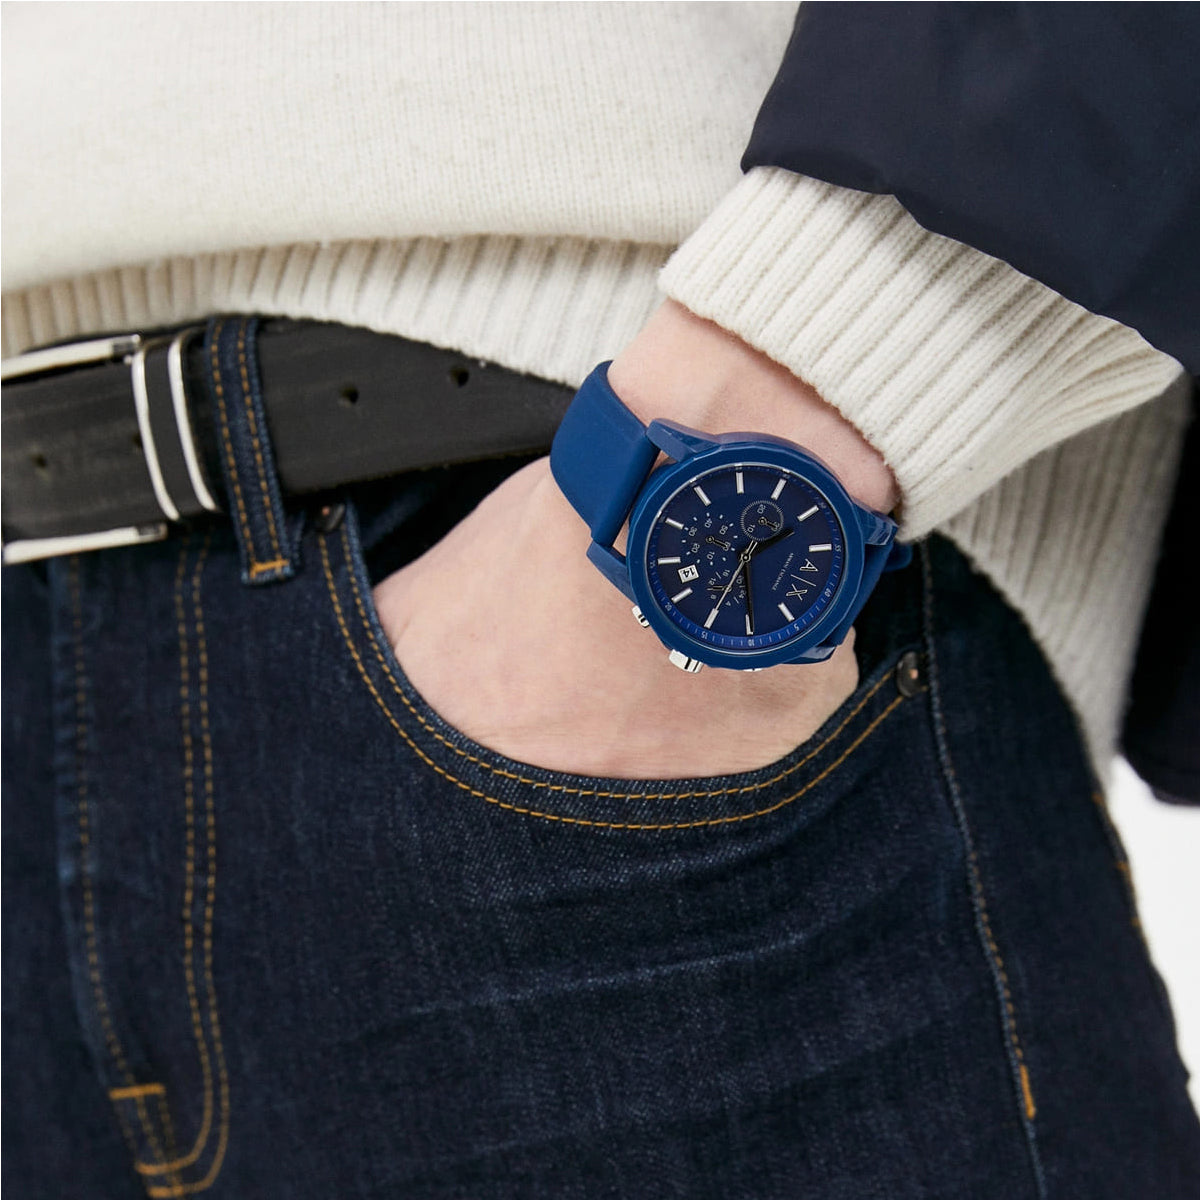 Versus Versace Tokyo Blue Silicone Strap Watch - 1BKFQE